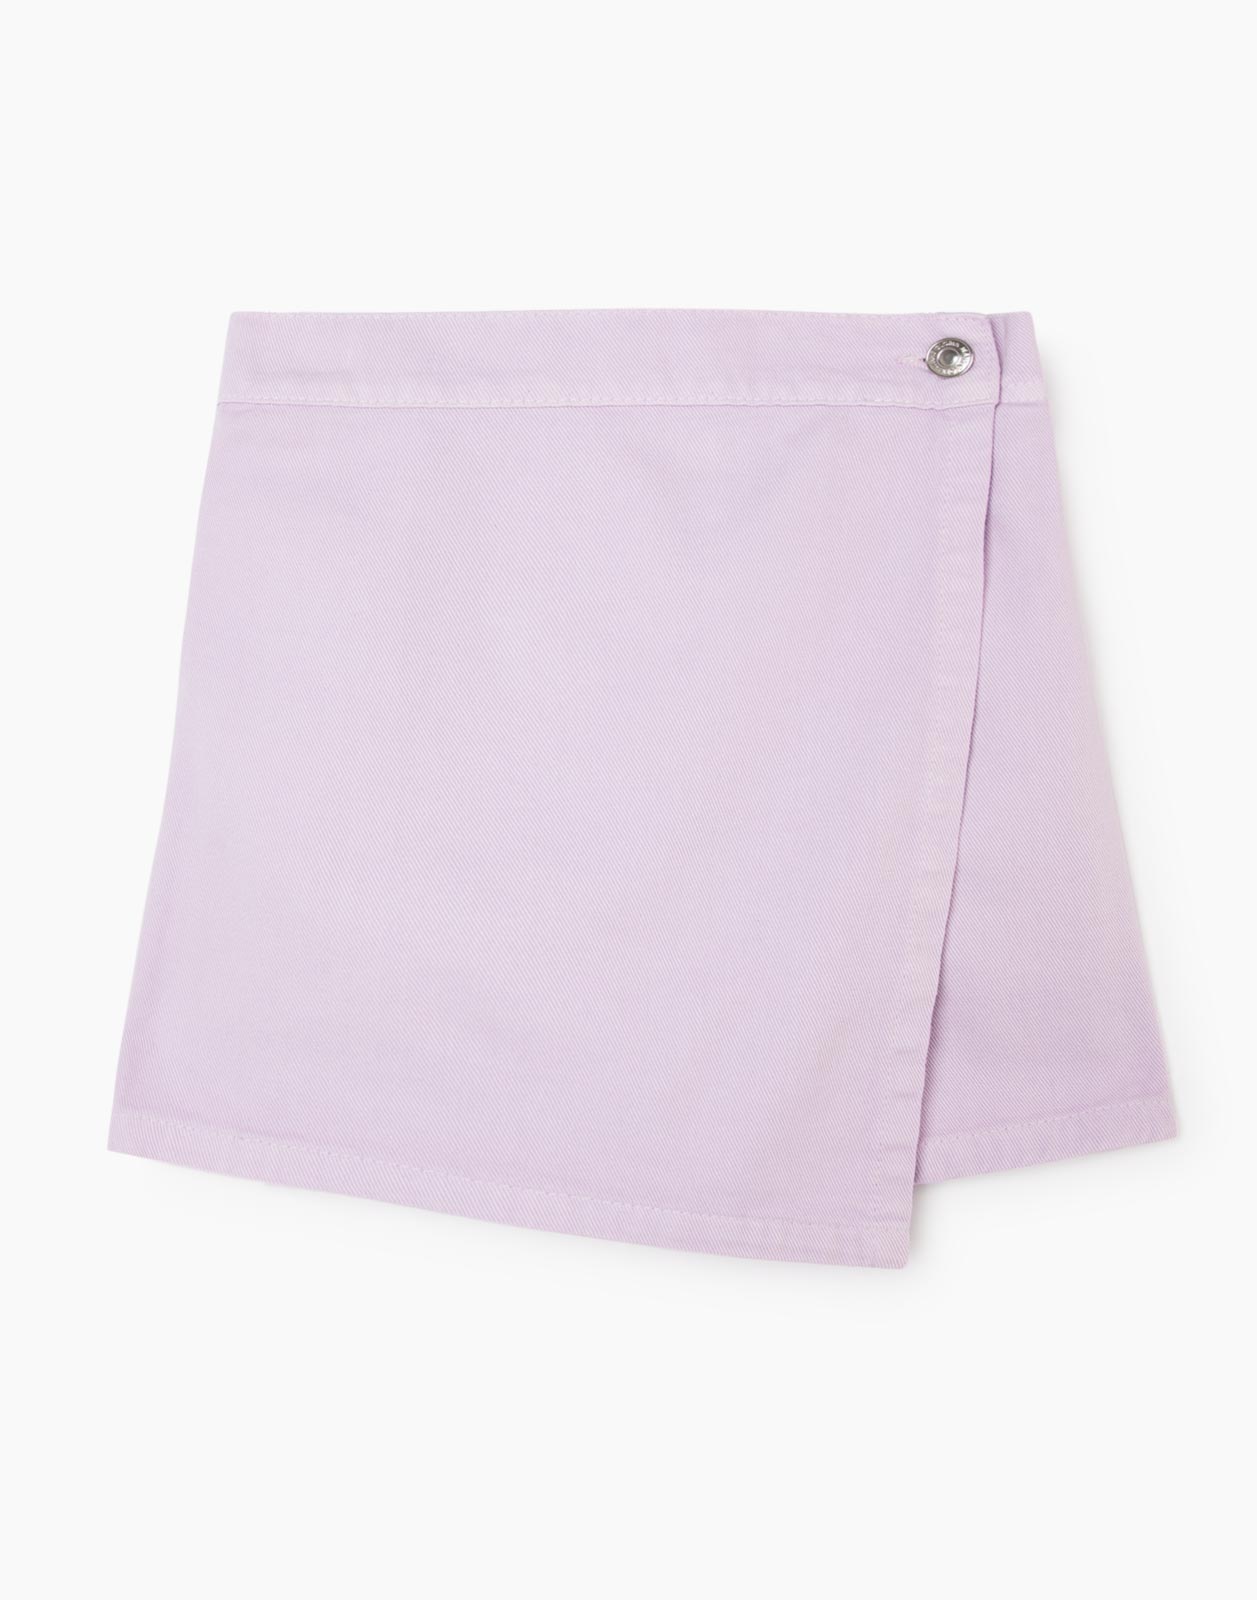 Сиреневая джинсовая юбка-шорты для девочки р.134-140